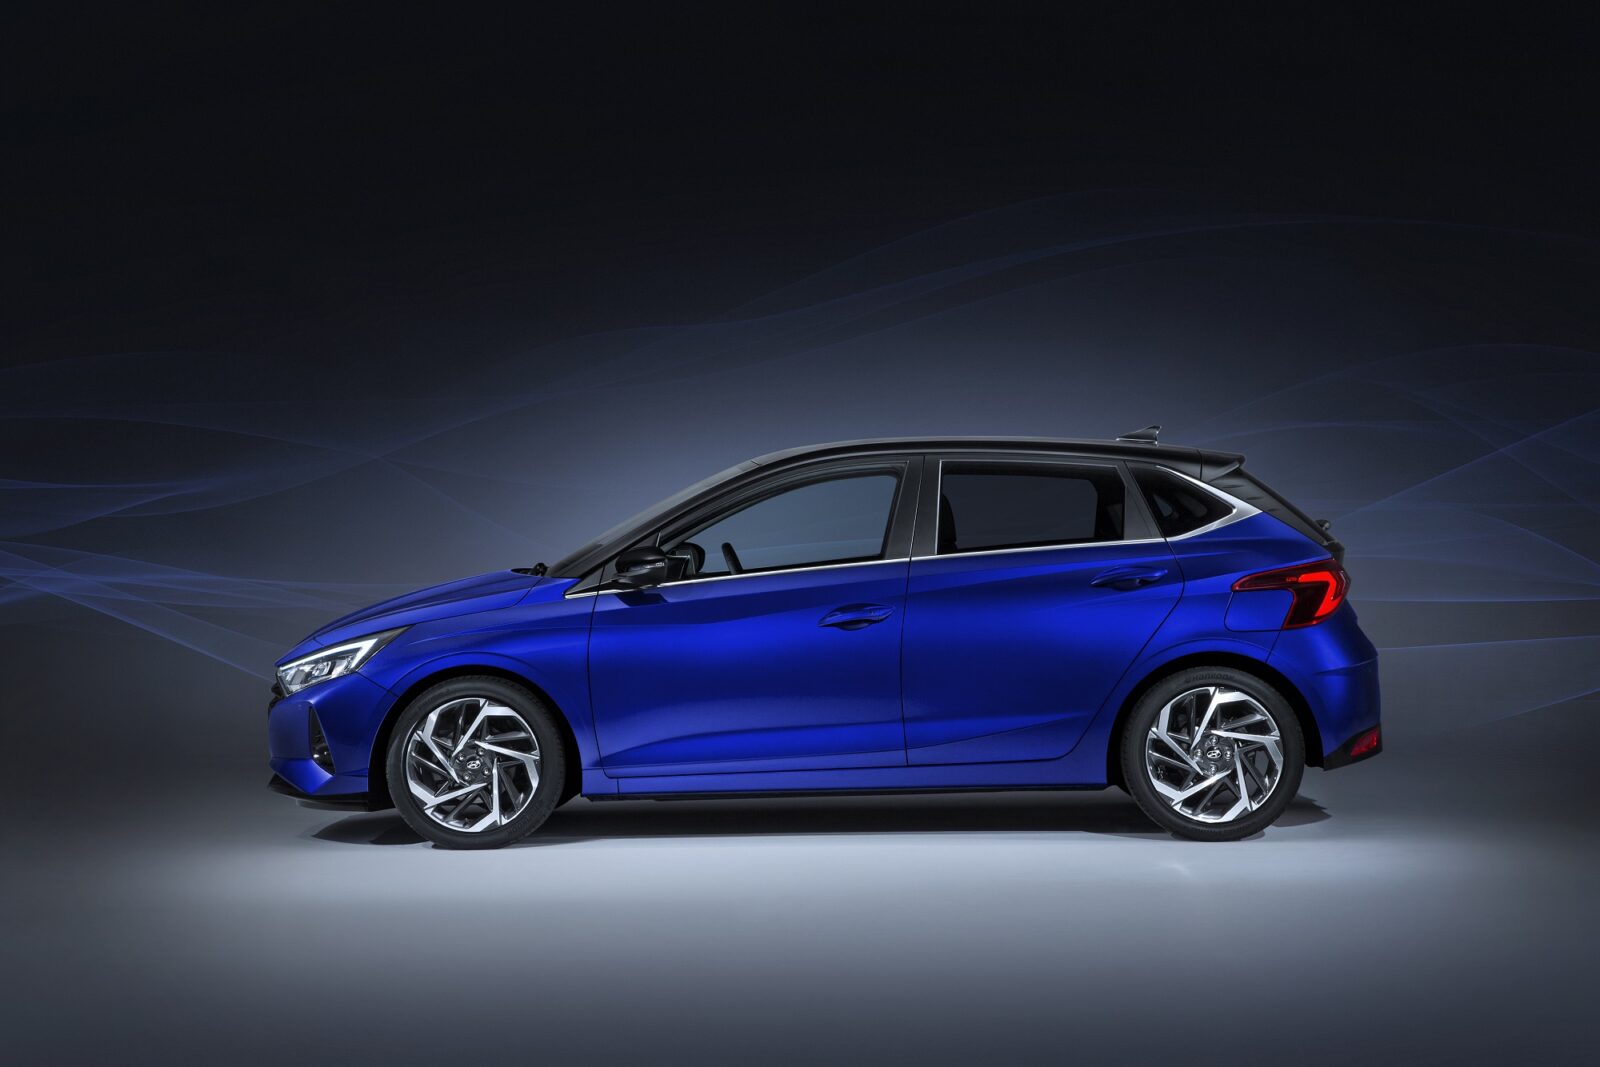 Nuova Hyundai i20: il design dinamico incontra la tecnologia avanzata